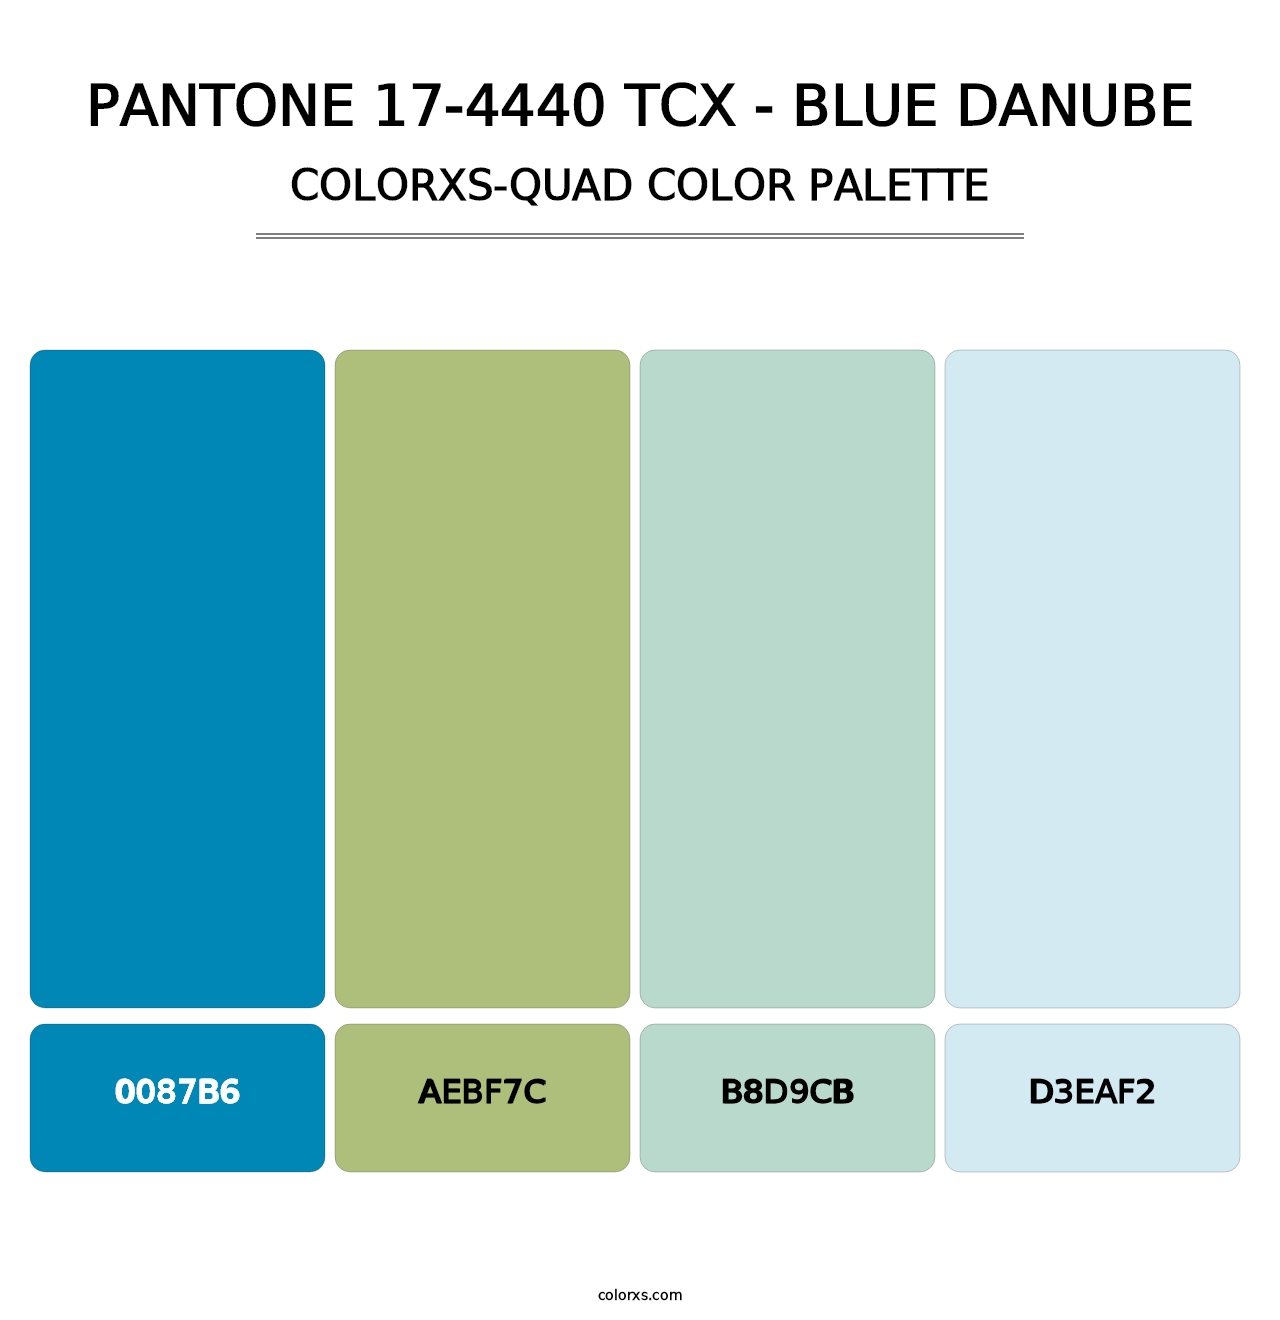 PANTONE 17-4440 TCX - Blue Danube - Colorxs Quad Palette